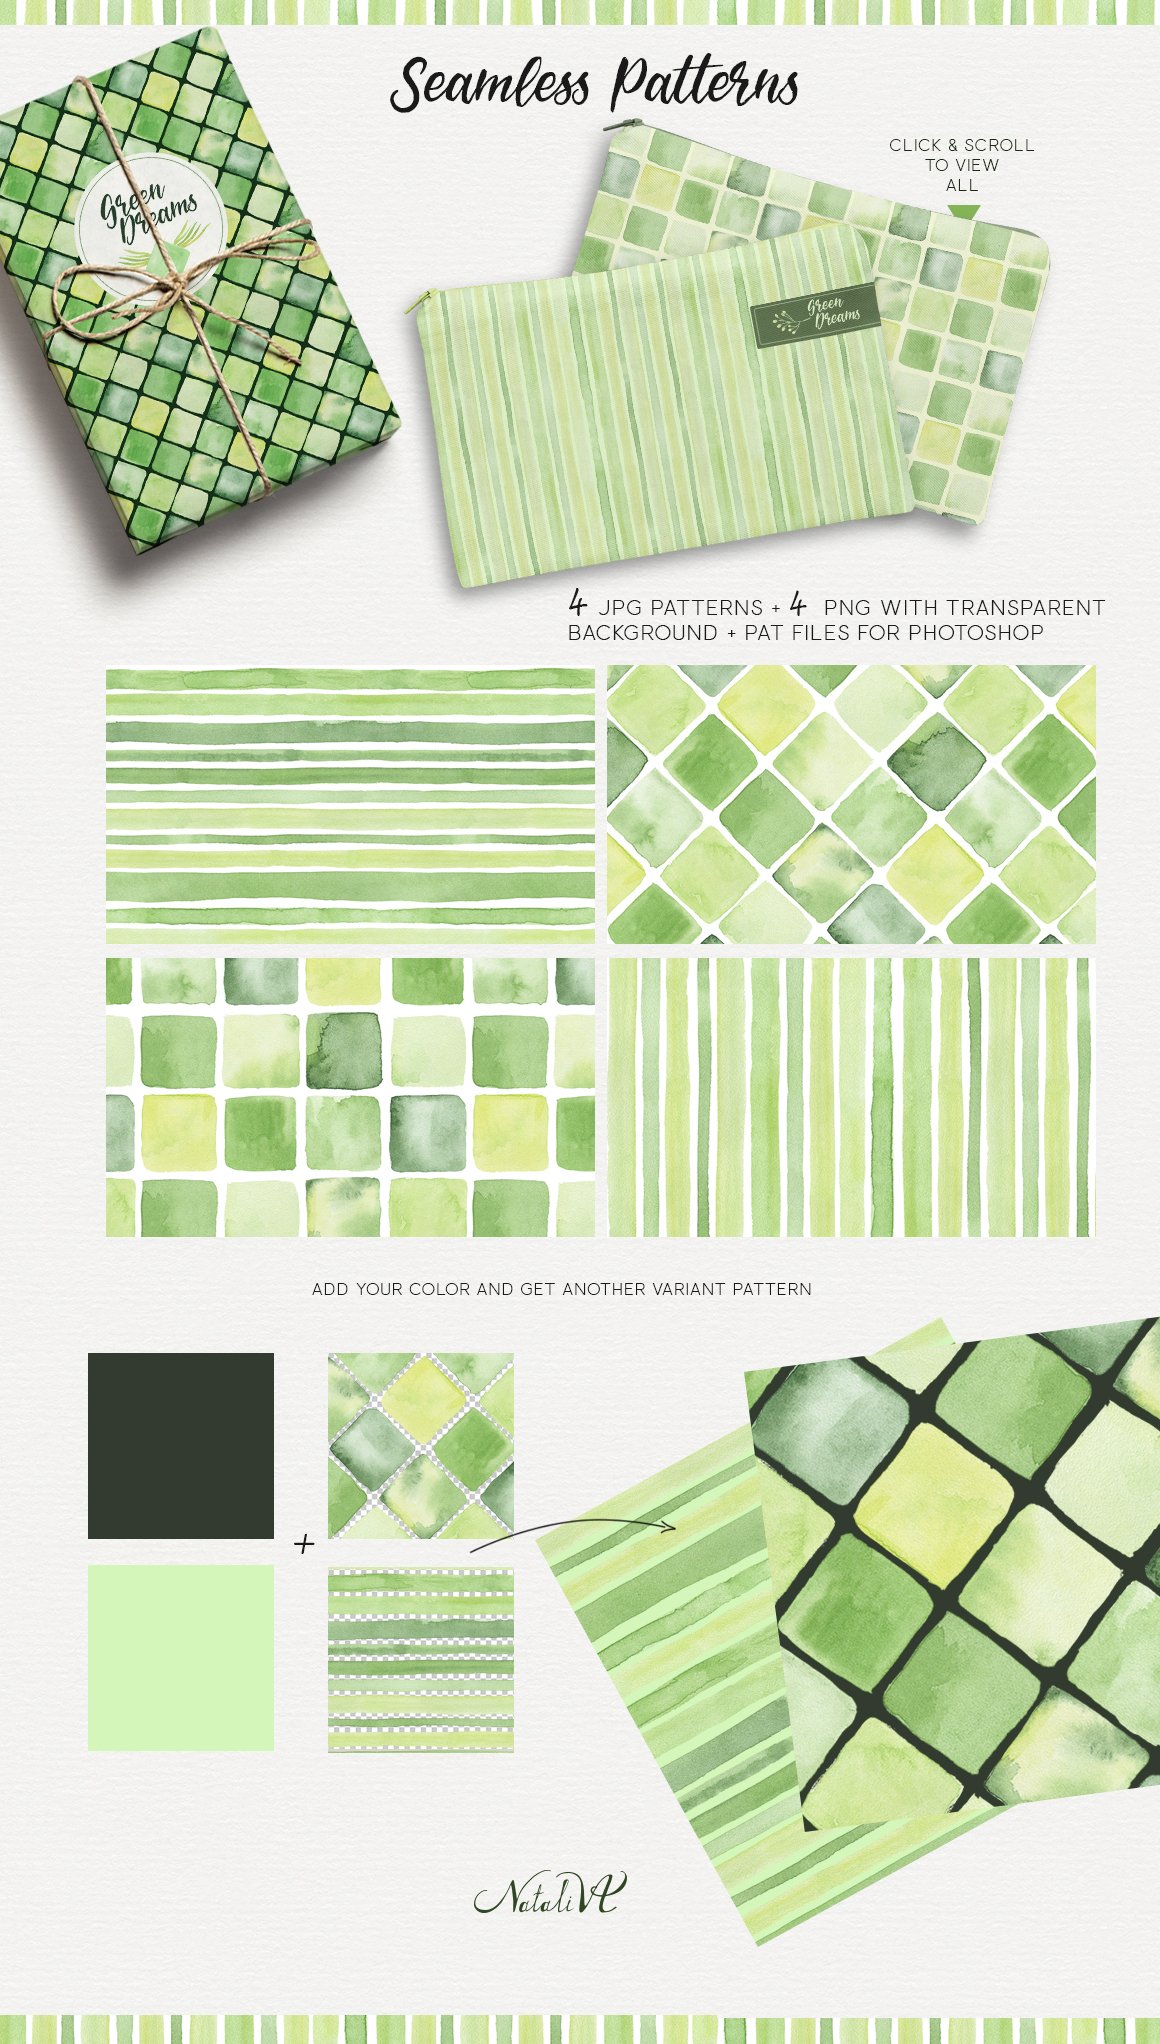 Green Dreams Watercolor Design Kit